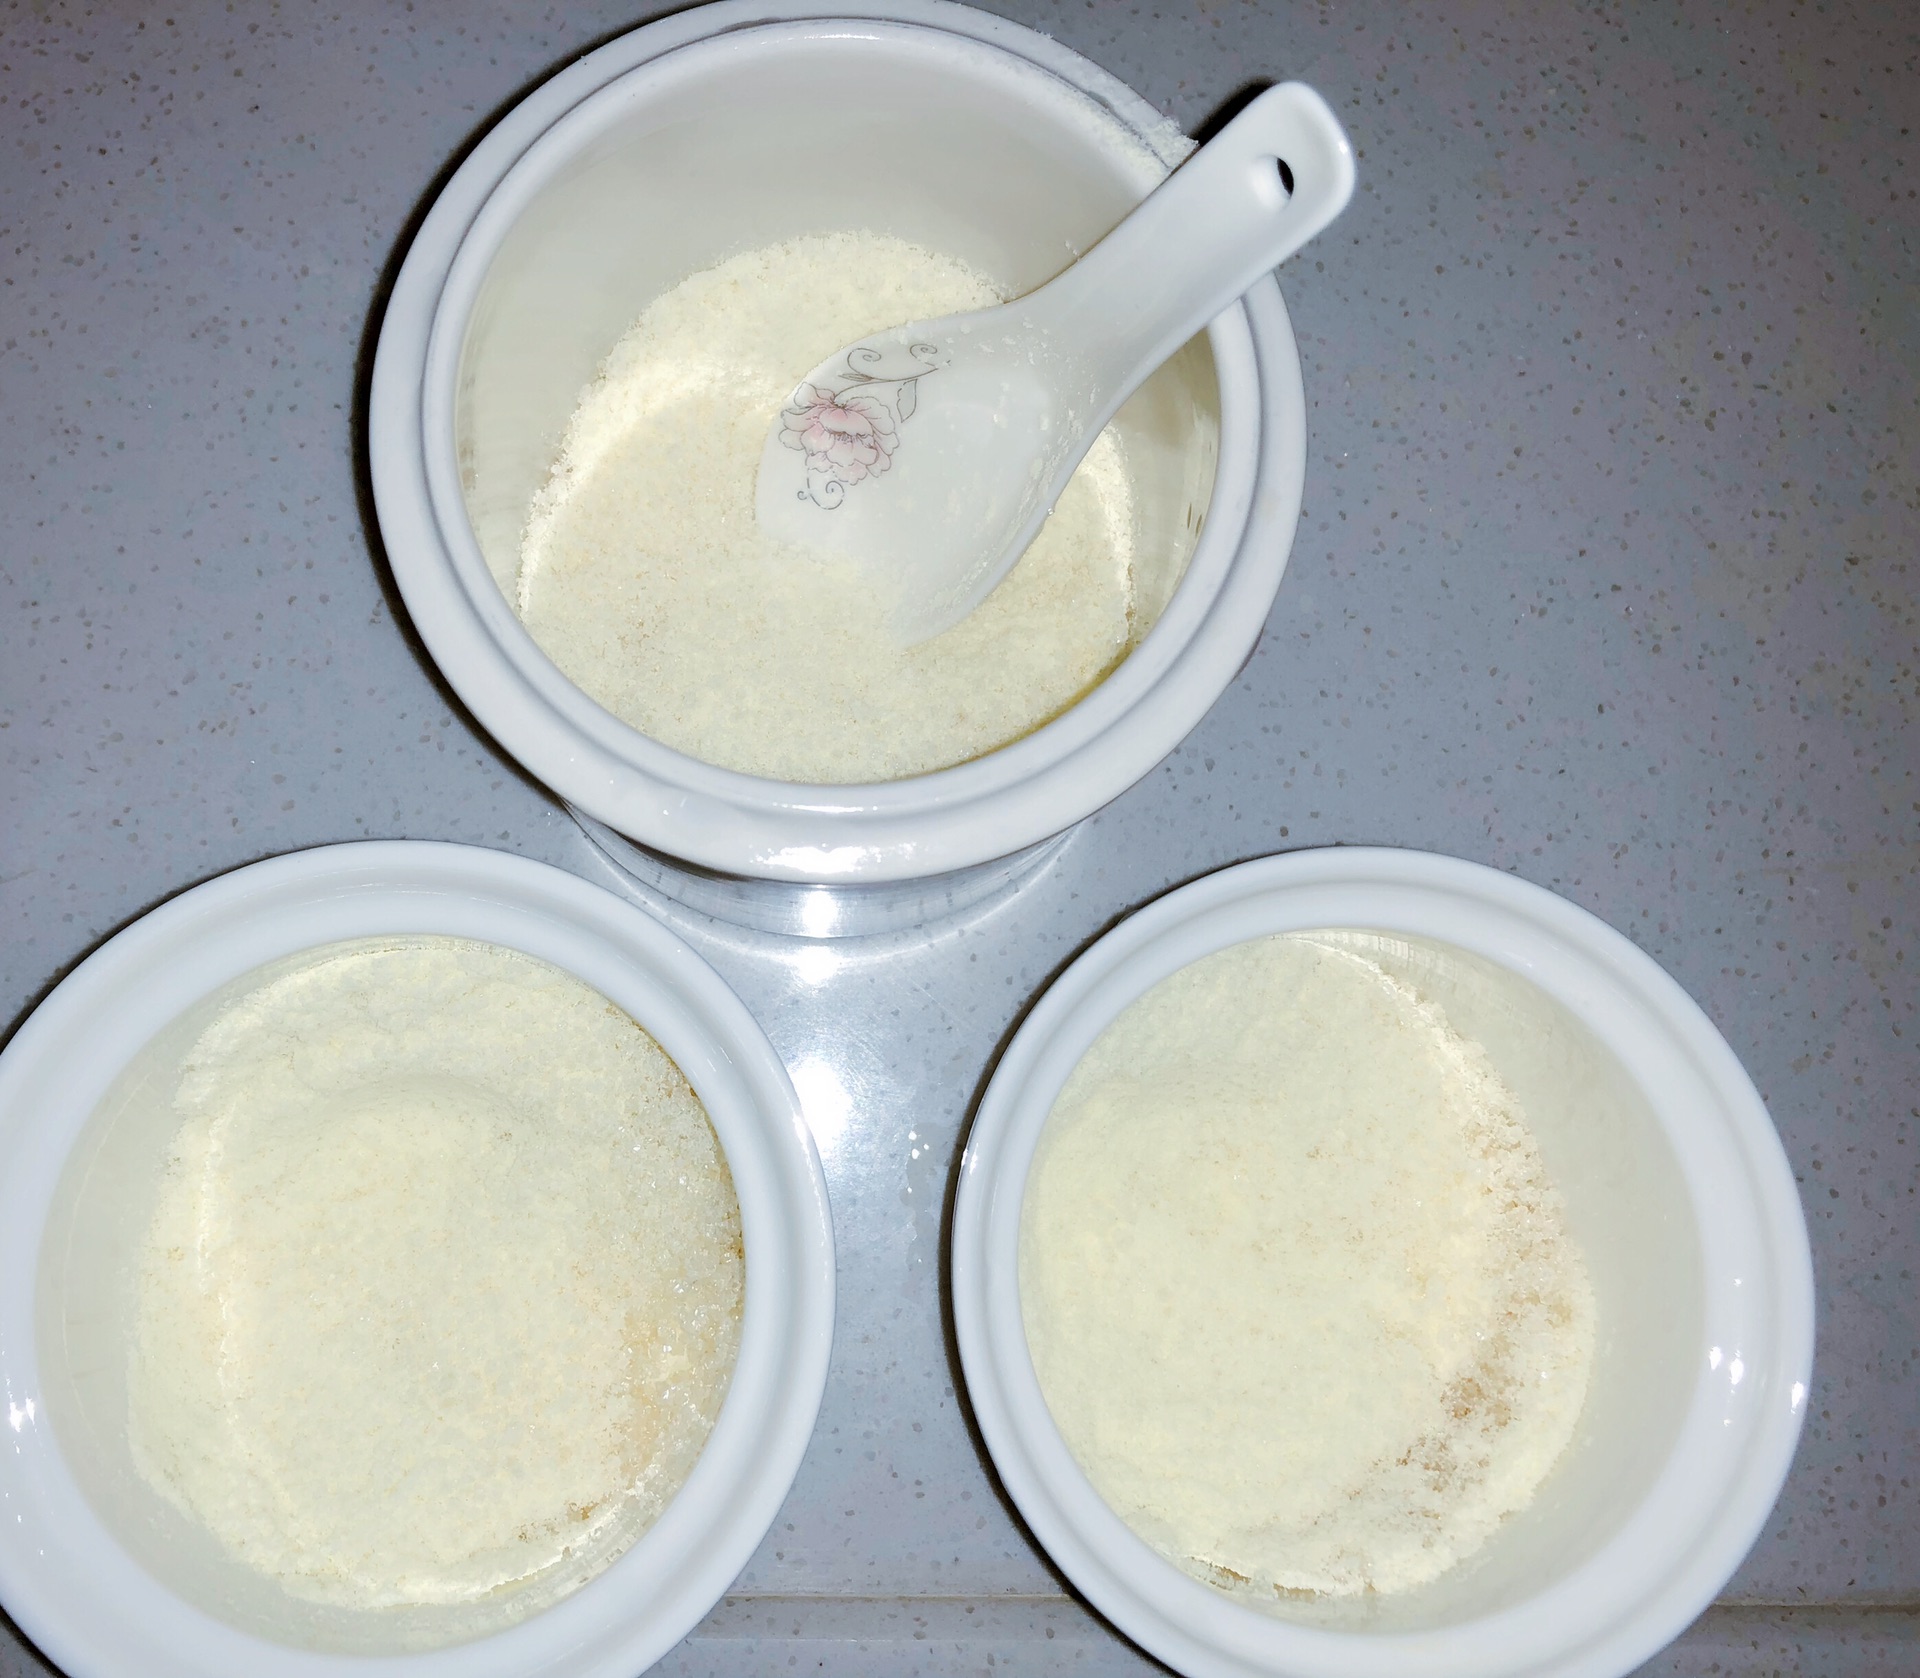 焦糖椰蓉烤蛋奶,焦糖椰蓉烤蛋奶的家常做法 - 美食杰焦糖椰蓉烤蛋奶做法大全